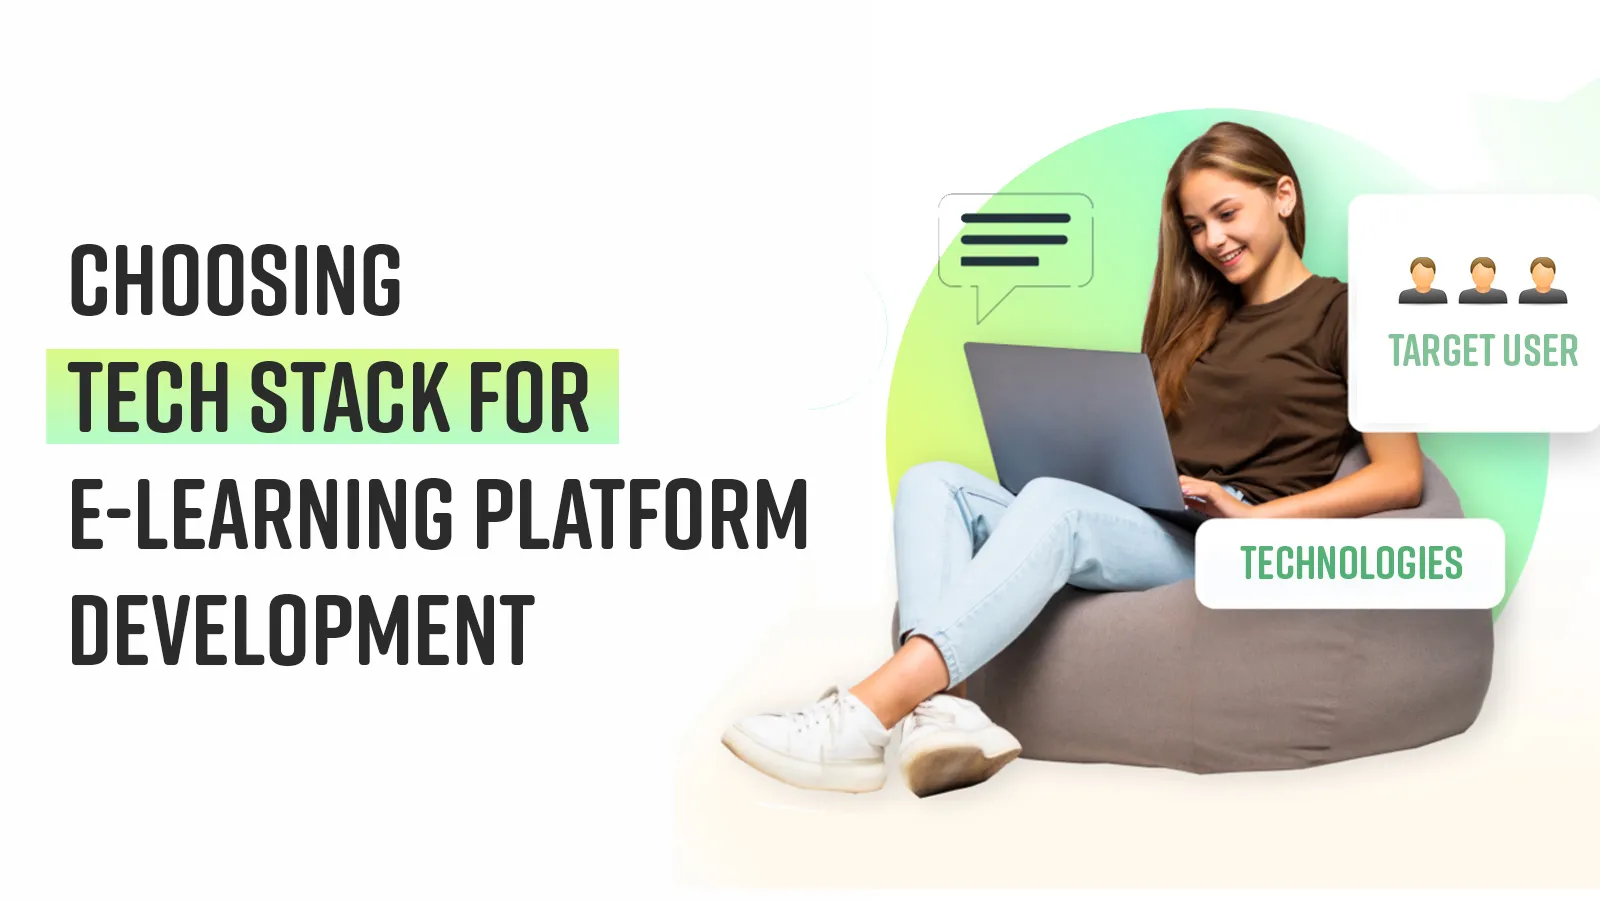 Choosing tech stack for e-learning platform development